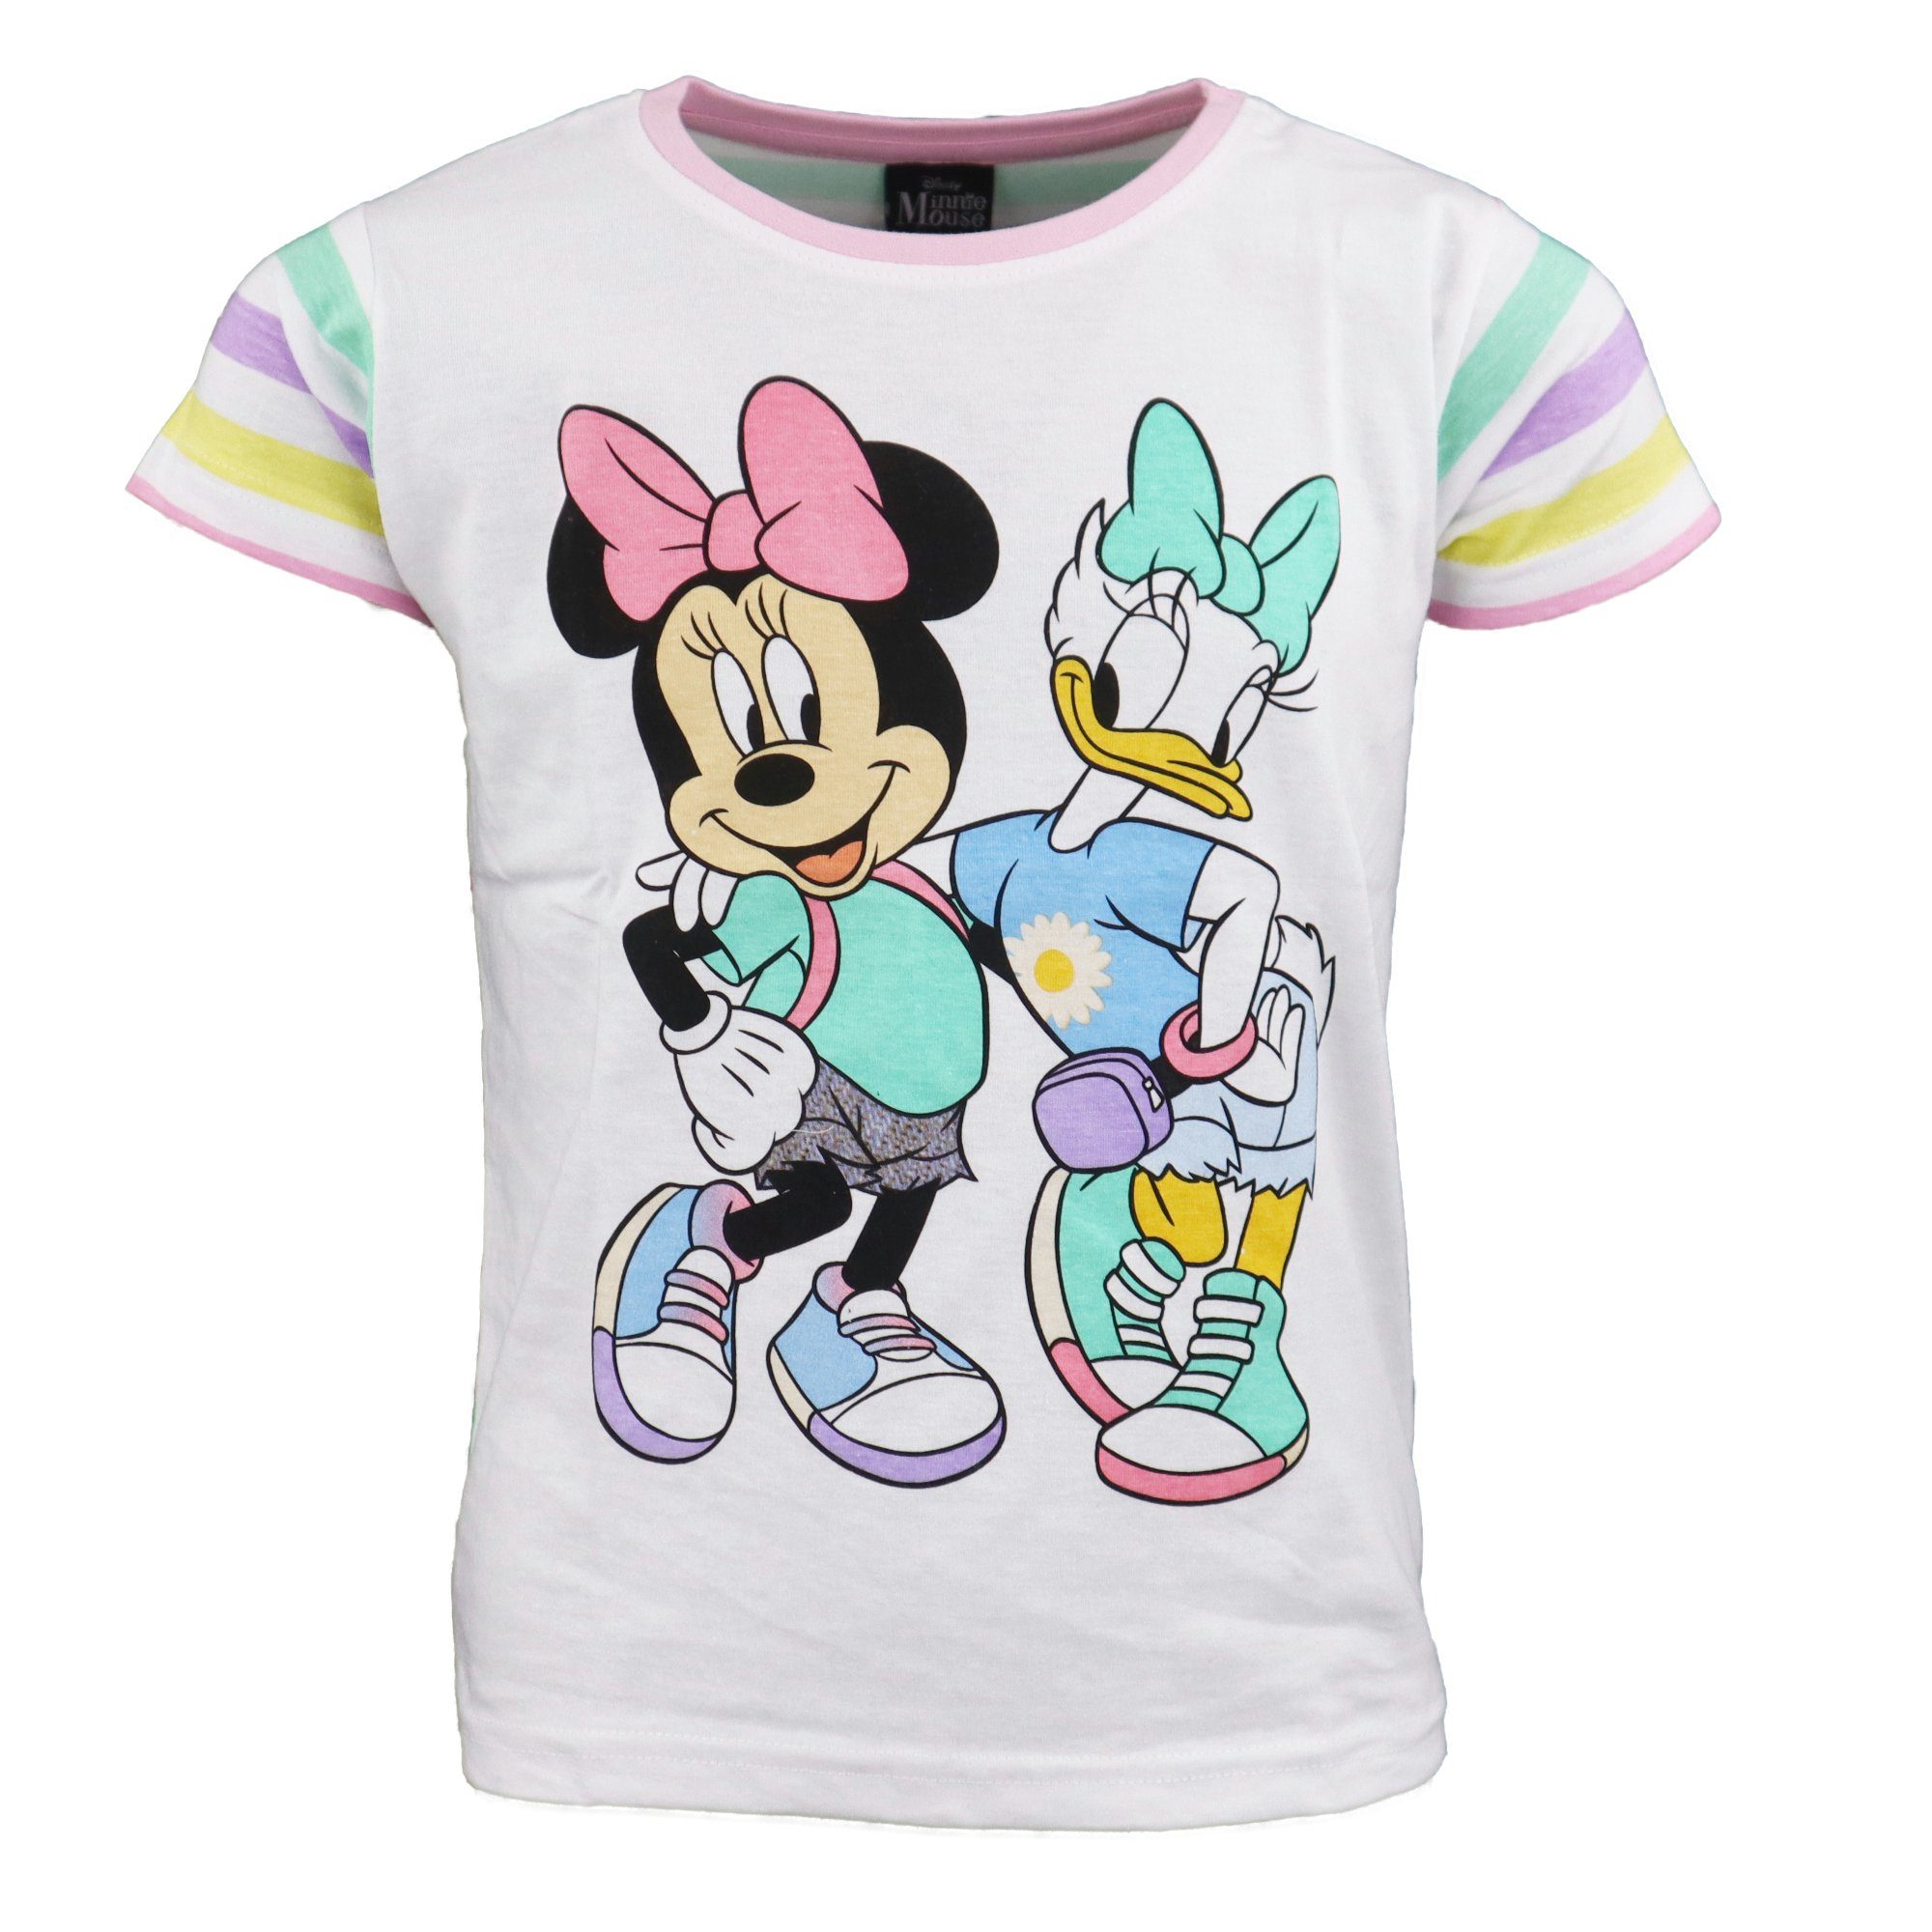 Disney Minnie Mouse Print-Shirt Minnie Maus und Daisy Duck Mädchen Kinder T-Shirt Gr. 104 bis 134 Weiß